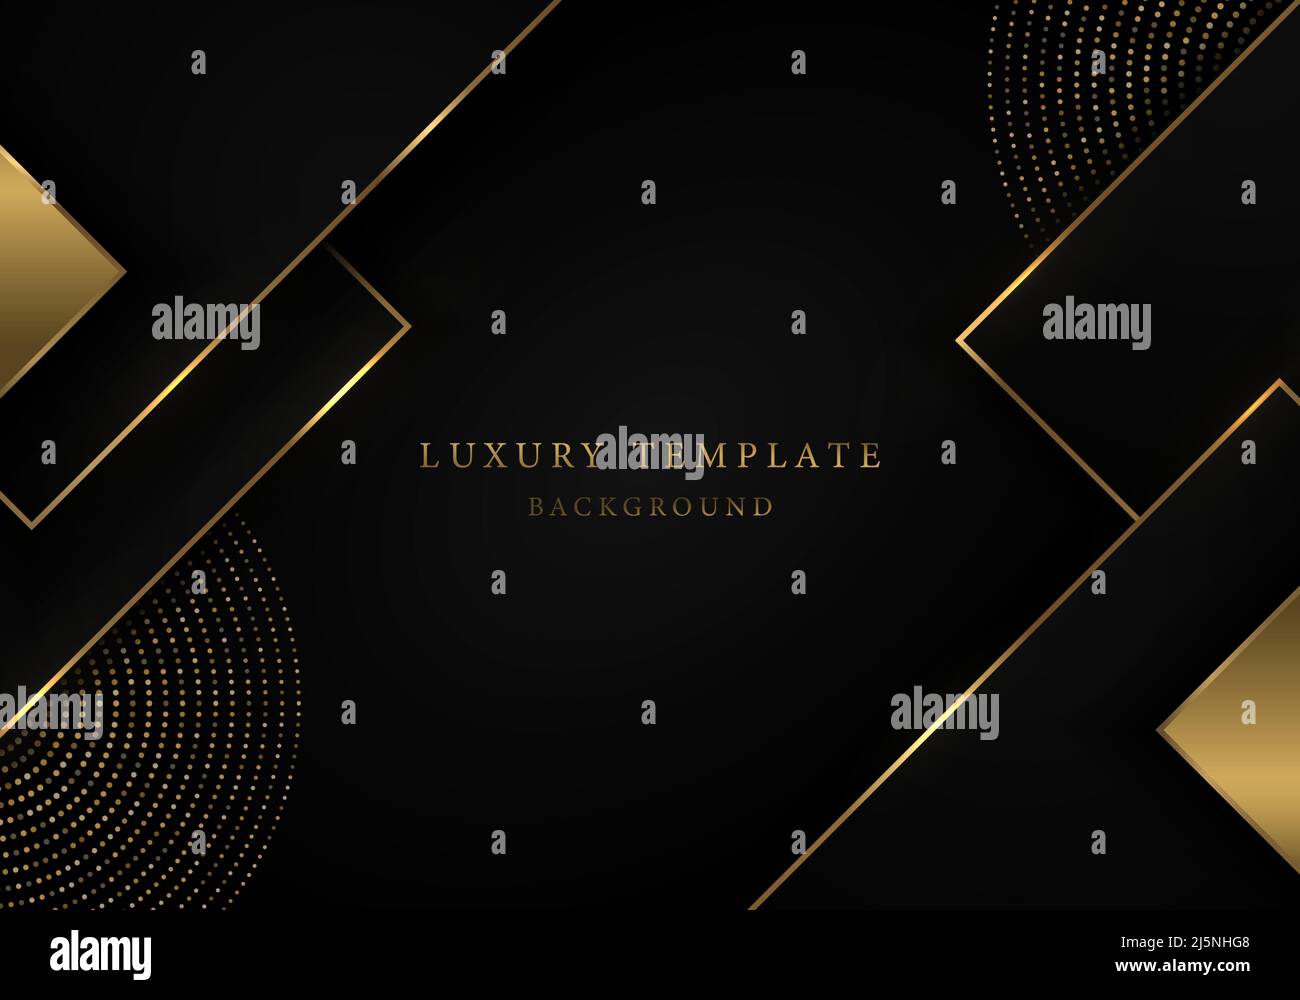 Abstrakte Luxus goldene Vorlage Design Kunstwerk. Dekorative Kunstwerke mit schwarzem Farbverlauf. Illustrationsvektor Stock Vektor